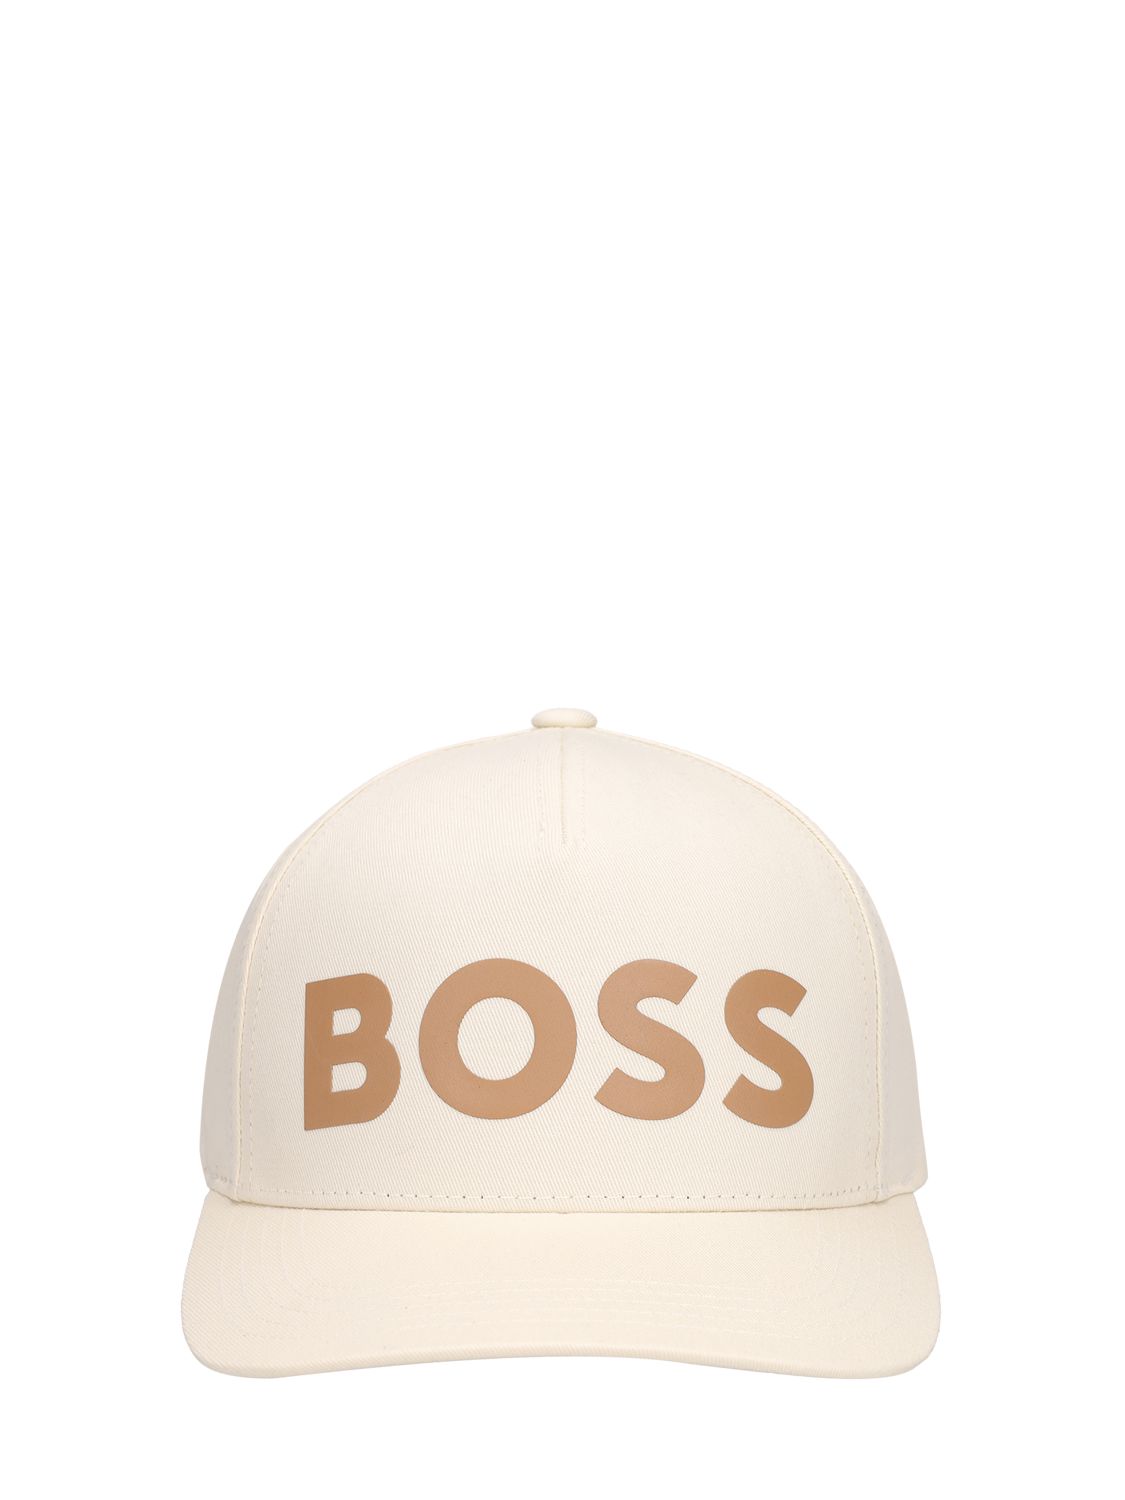 Hugo Boss Sevile Logo Cotton Cap In Open White